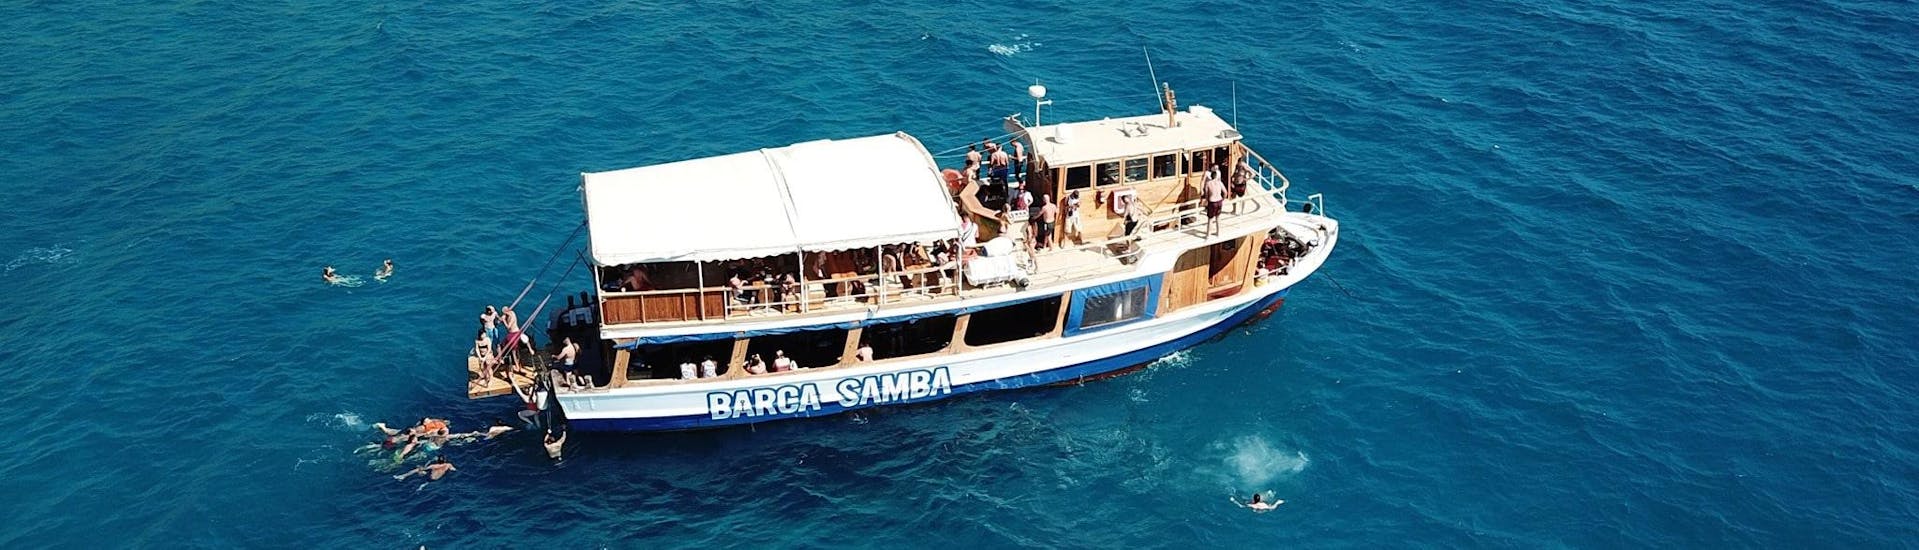 Gita in barca intorno a Palma di Maiorca con musica live & snorkeling.